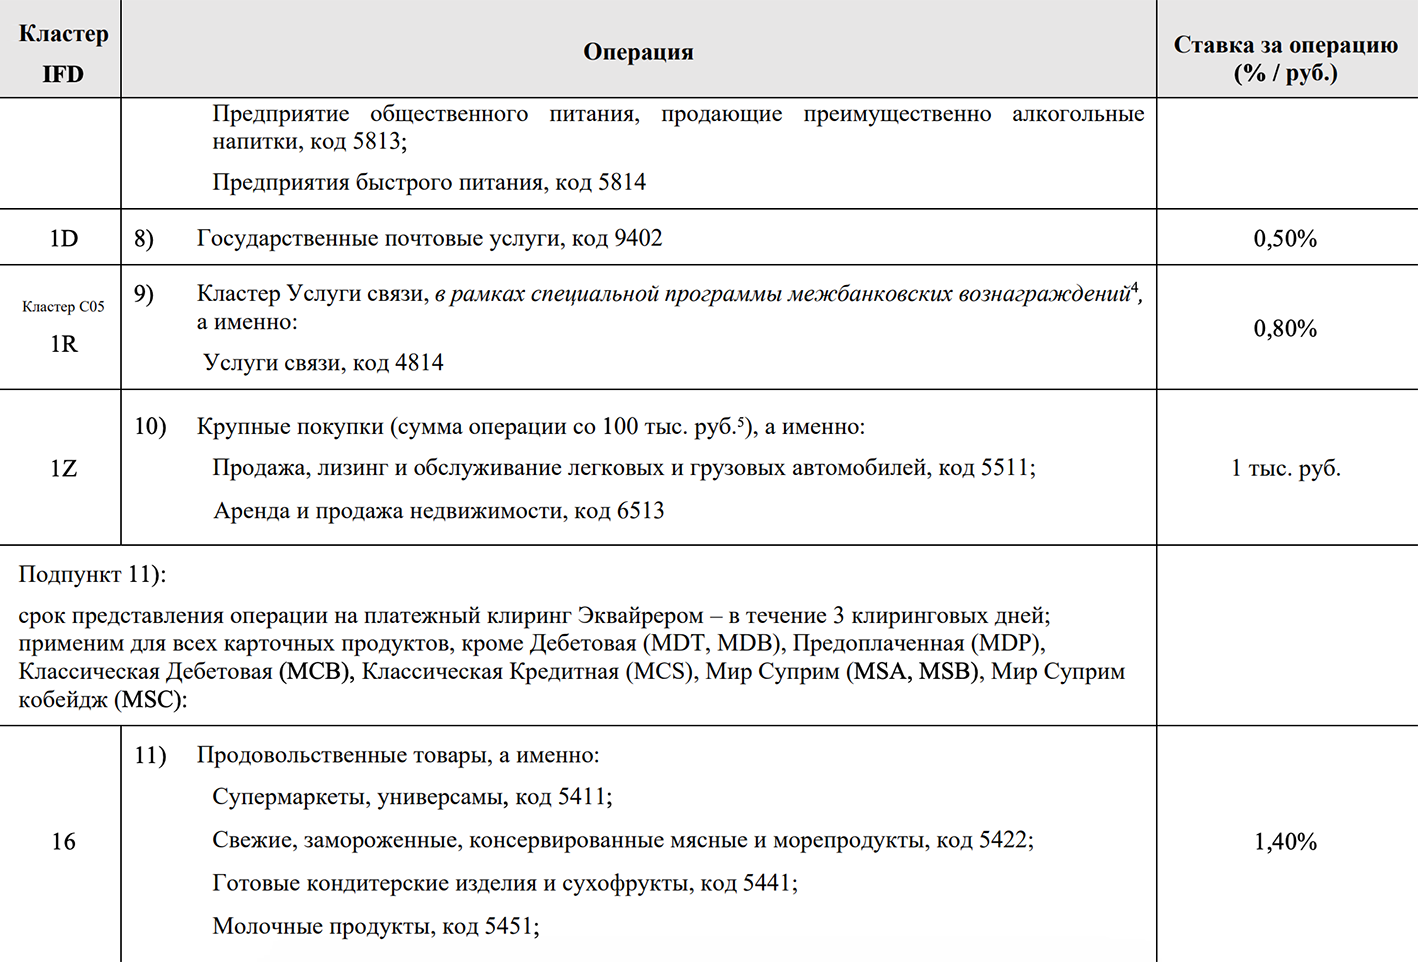 Например, 1,4% от оплаты в супермаркете банк⁠-⁠эквайер платит банку-эмитенту — это комиссия для магазинов продовольственных товаров. Источник: nspk.ru